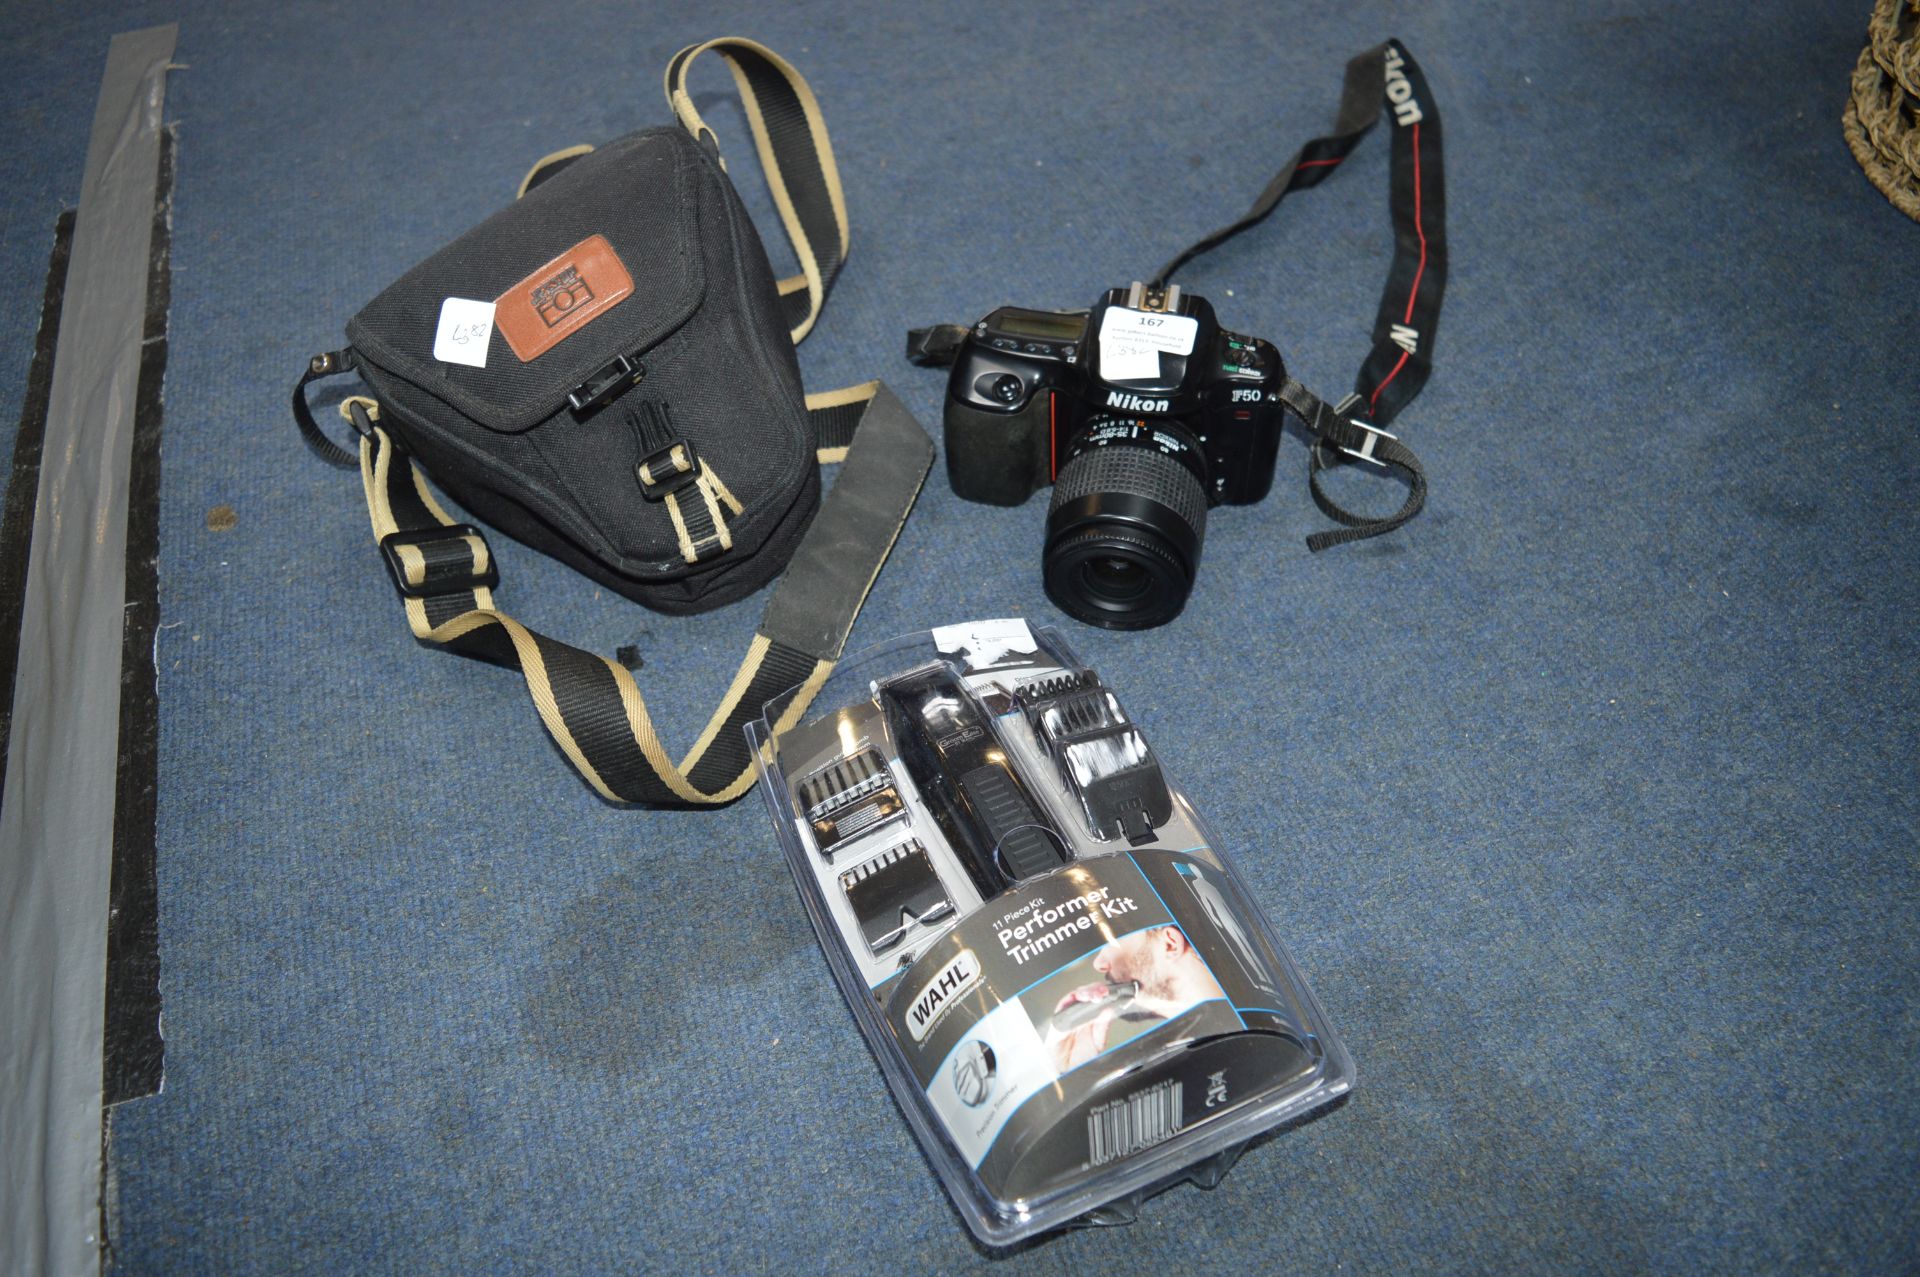 Nikon F50 Digital Camera plus Wahl Trimmer Kit